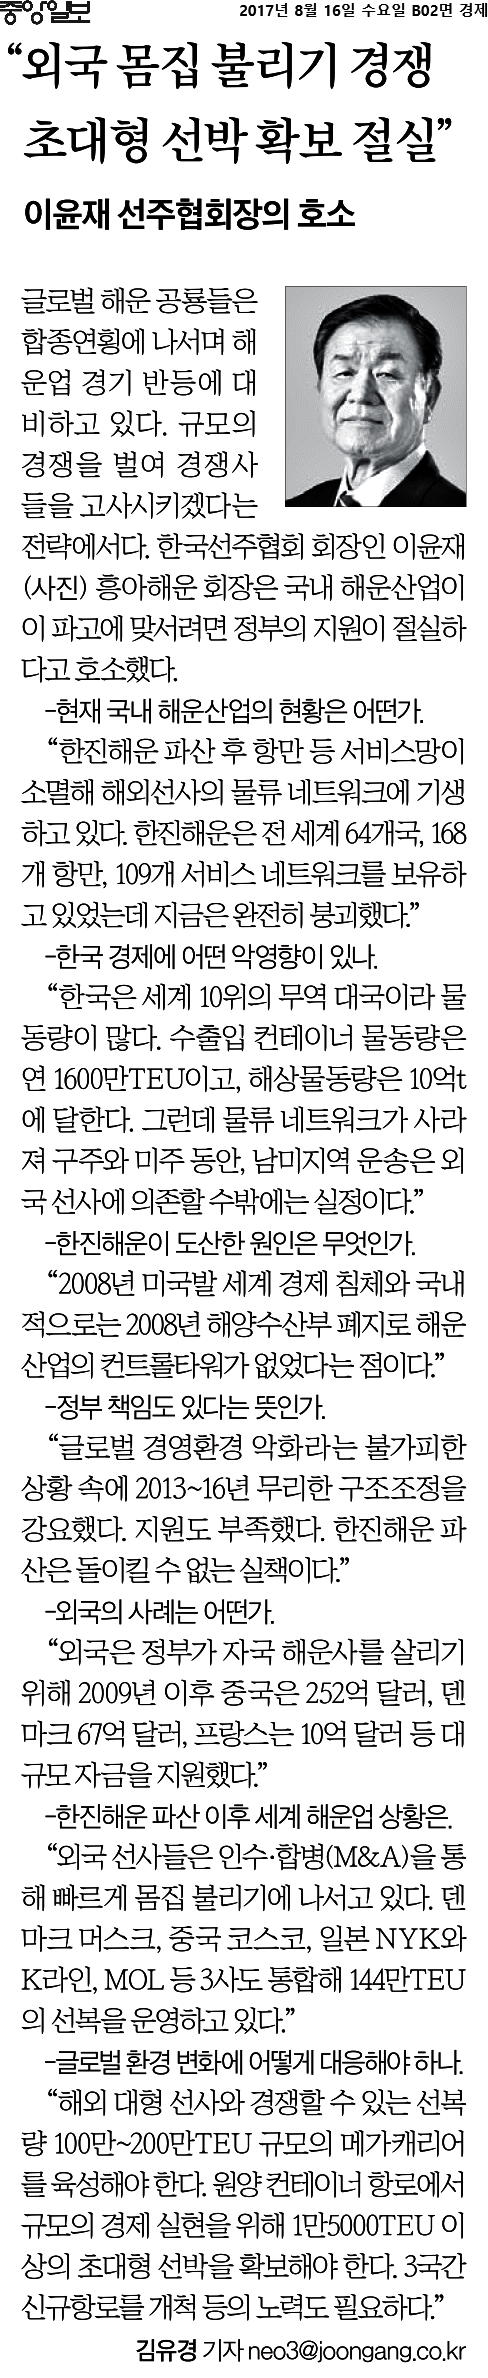 중앙일보_“외국 몸집 불리기 경쟁 초대형 선박 확보 절실”_2017-08-16.png